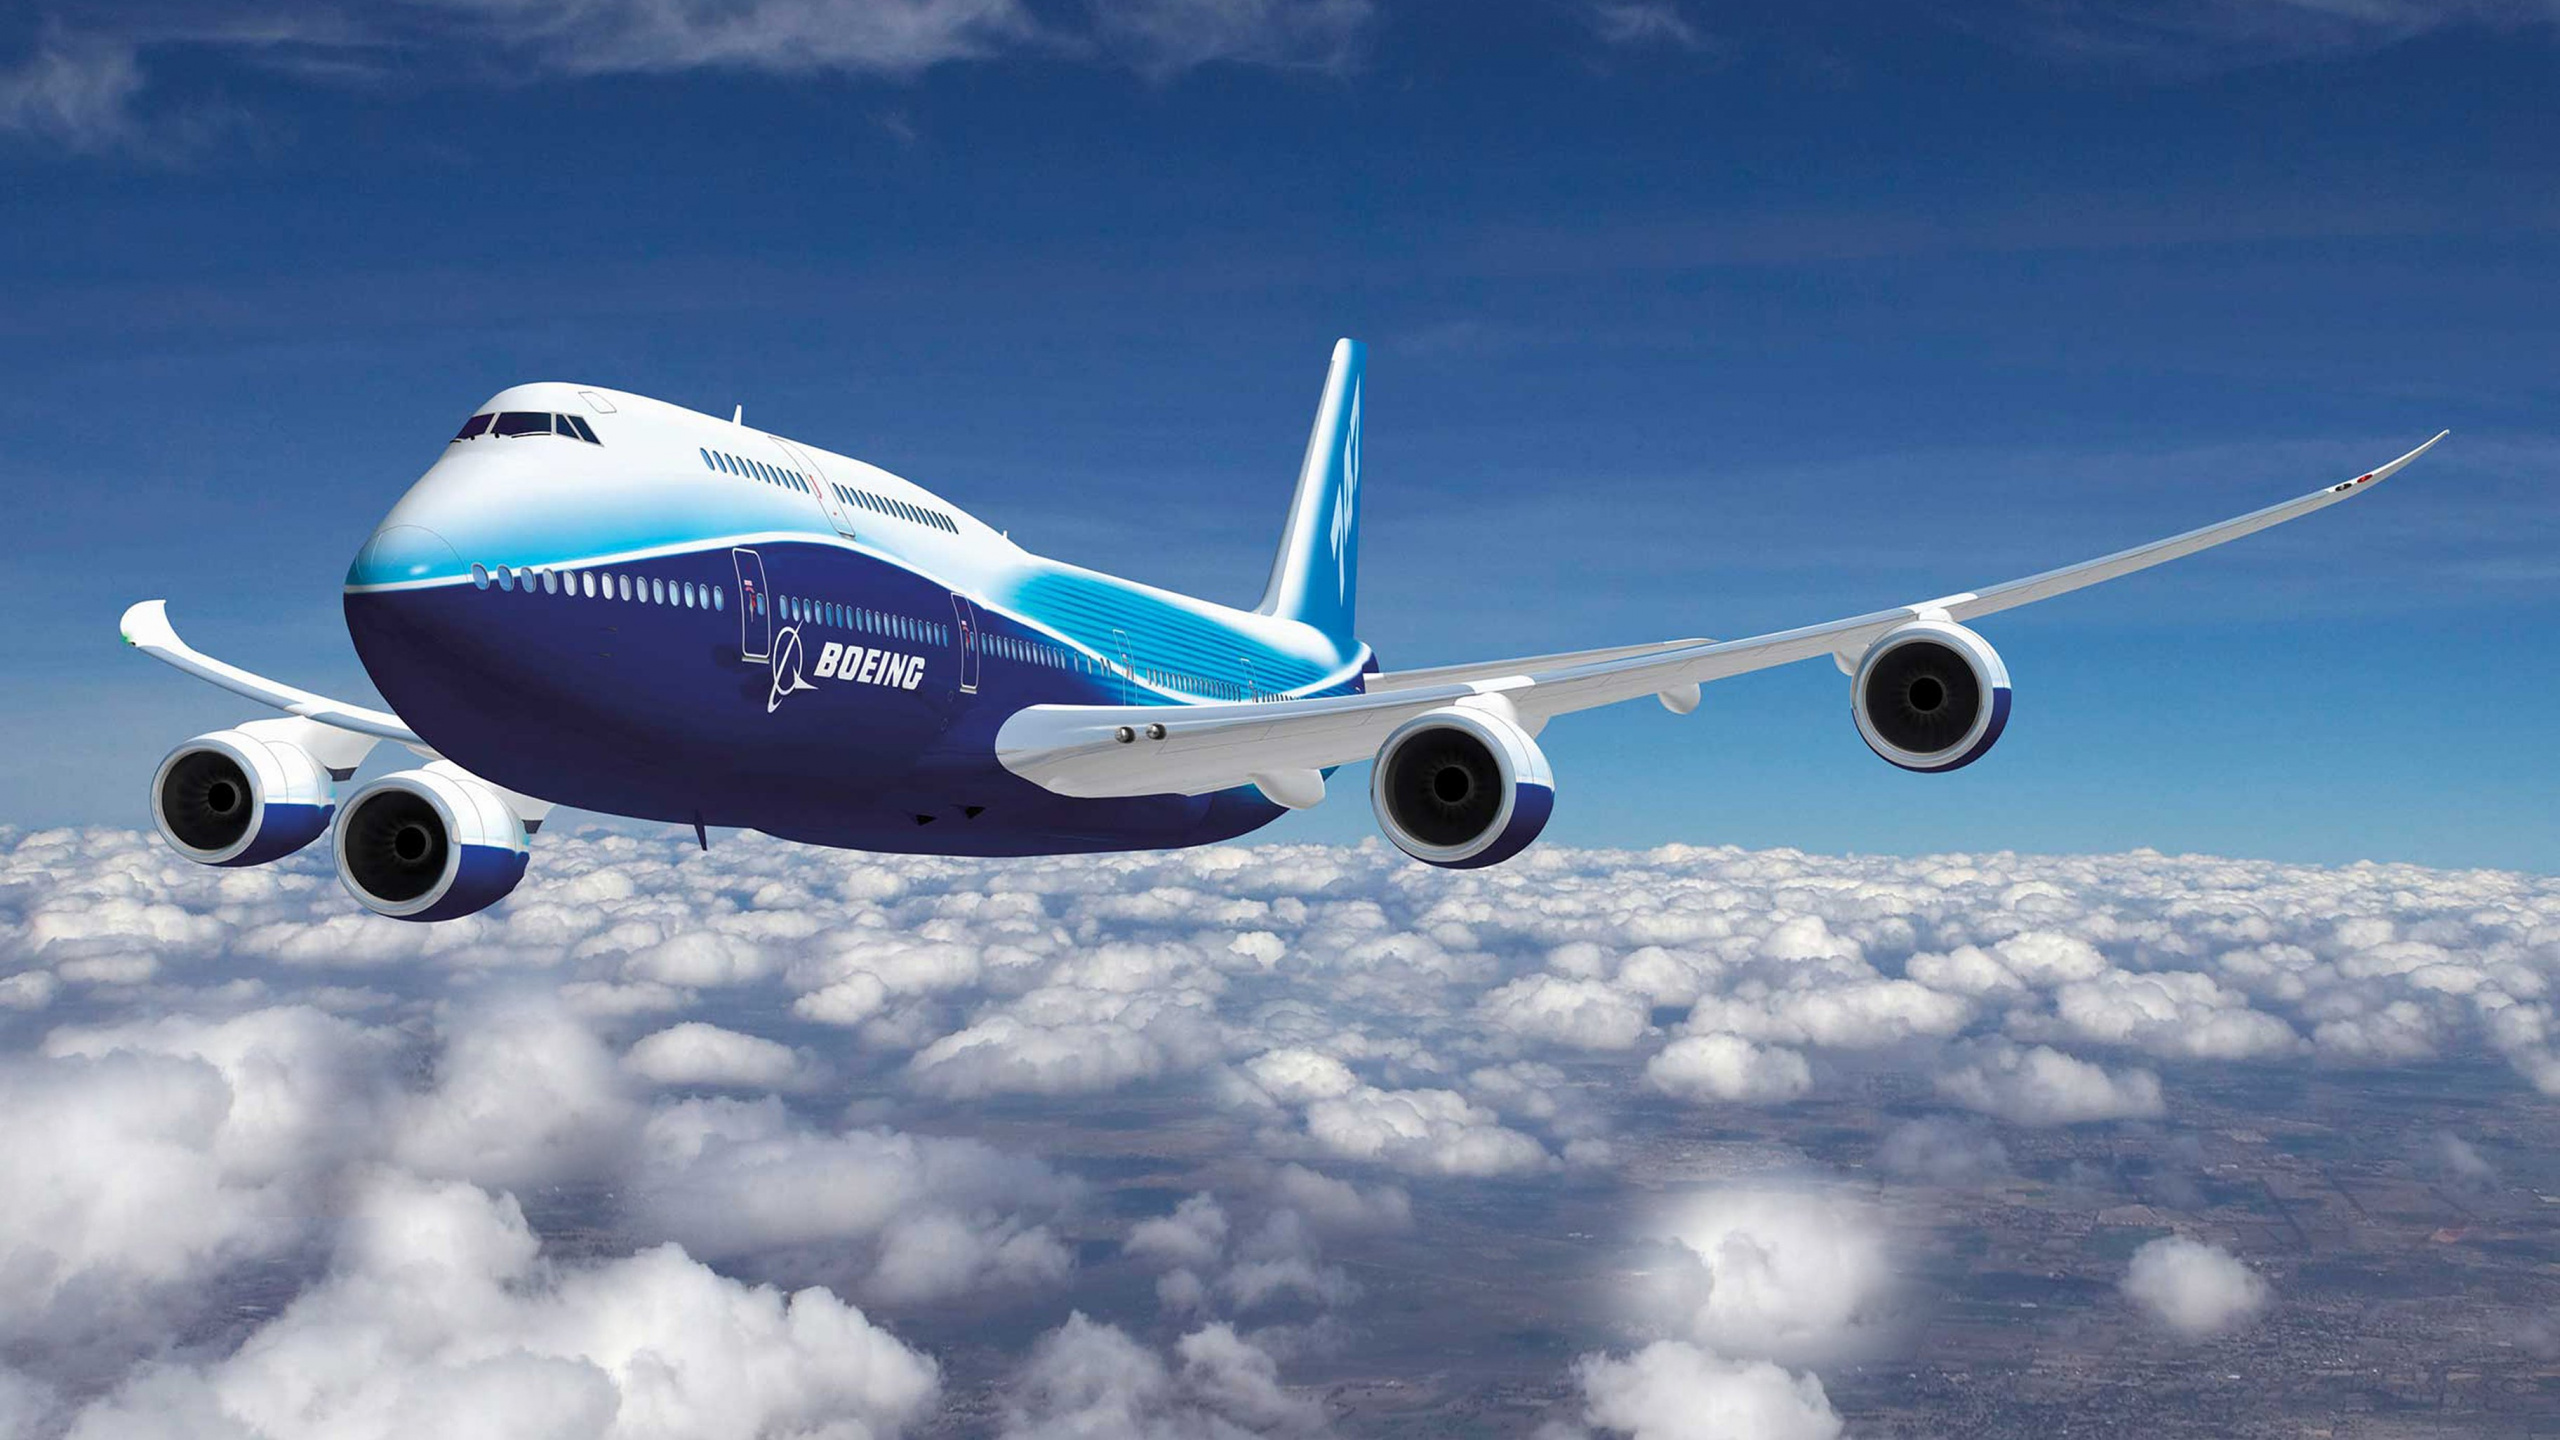 波音, 客机, 波音747, 航空公司, 空中旅行 壁纸 2560x1440 允许